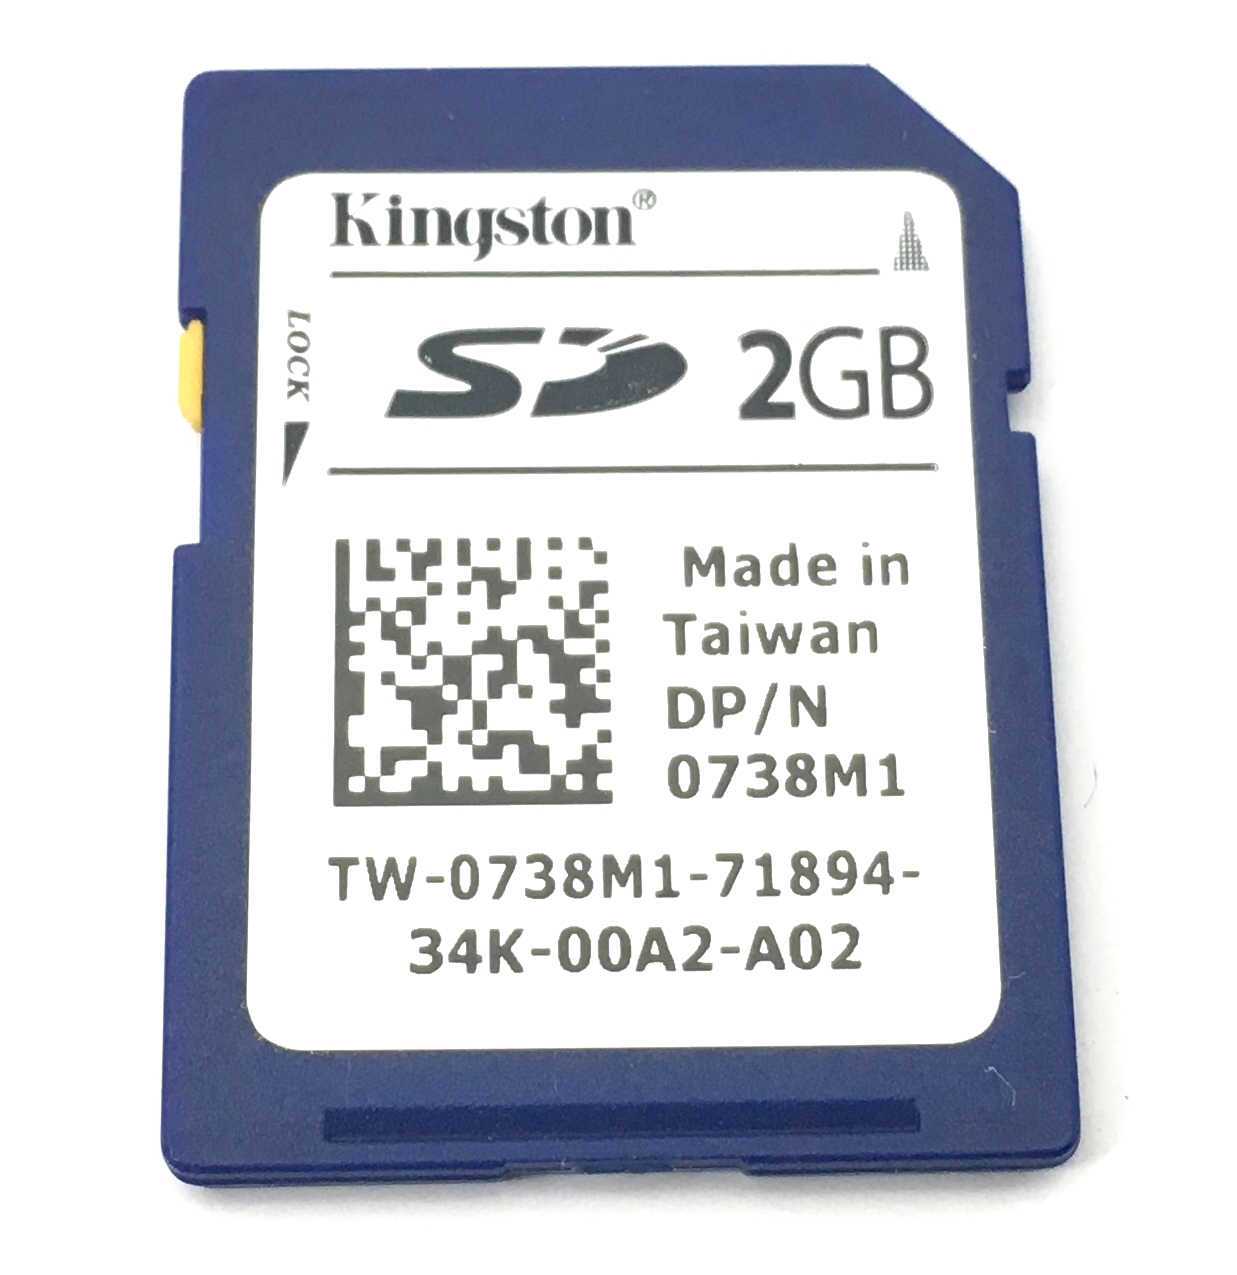 Dell Kingston 2GB iDRAC Flash Sd Card (738M1)